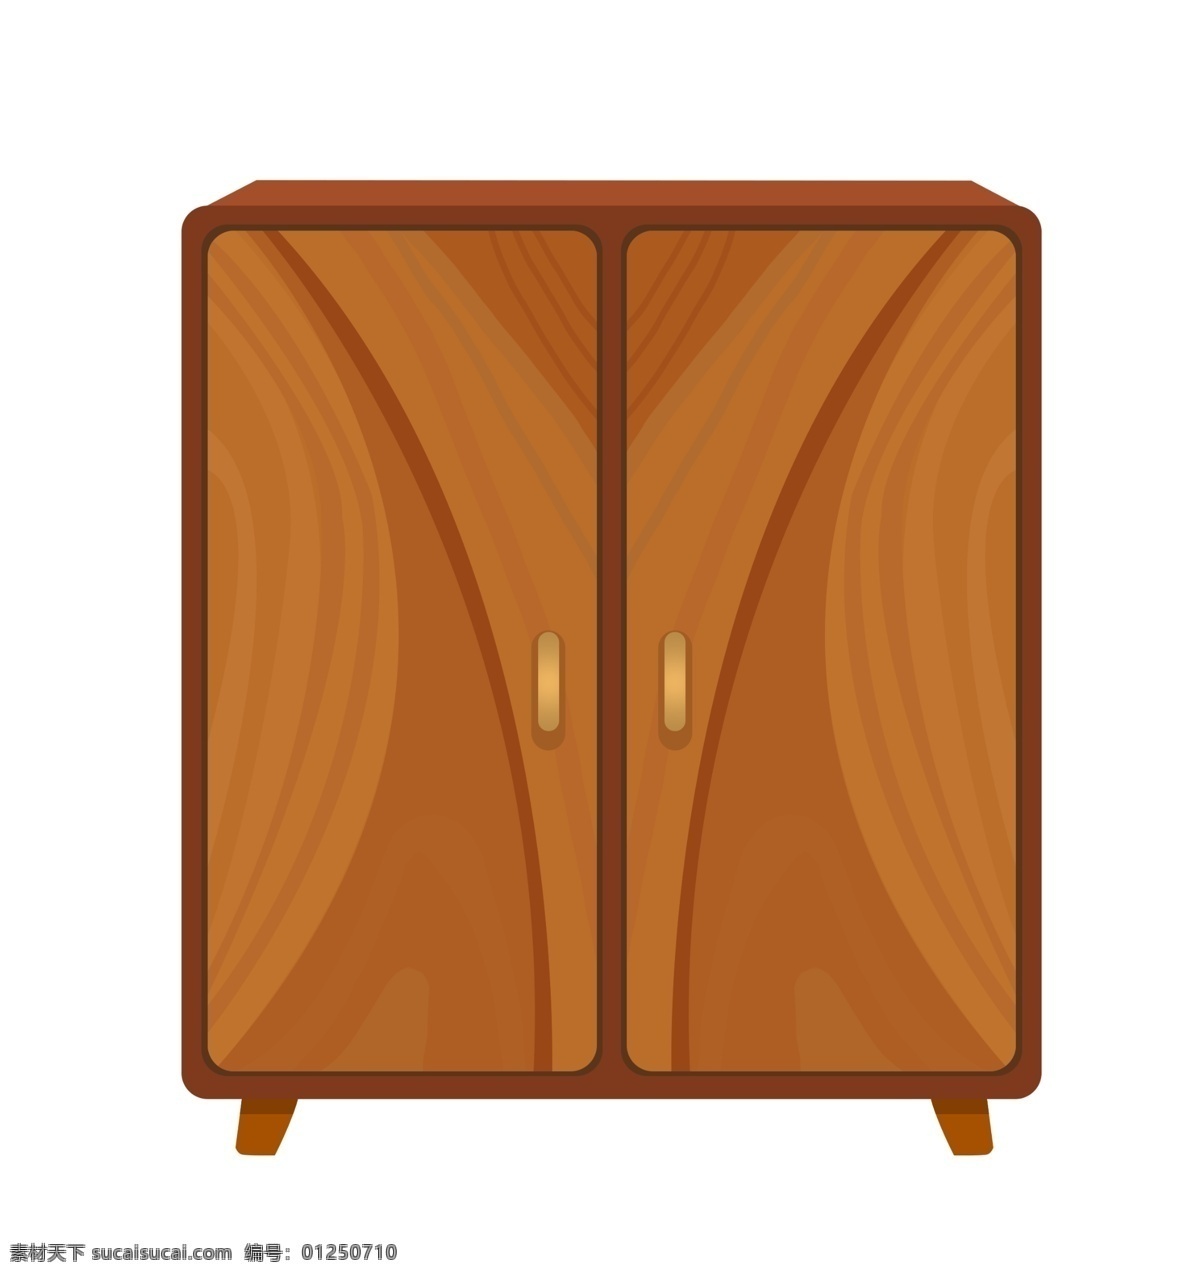 木质 柜子 卡通 插画 木质的柜子 卡通插画 木质插画 木头 木块 木板 木材 木料 结实的柜子